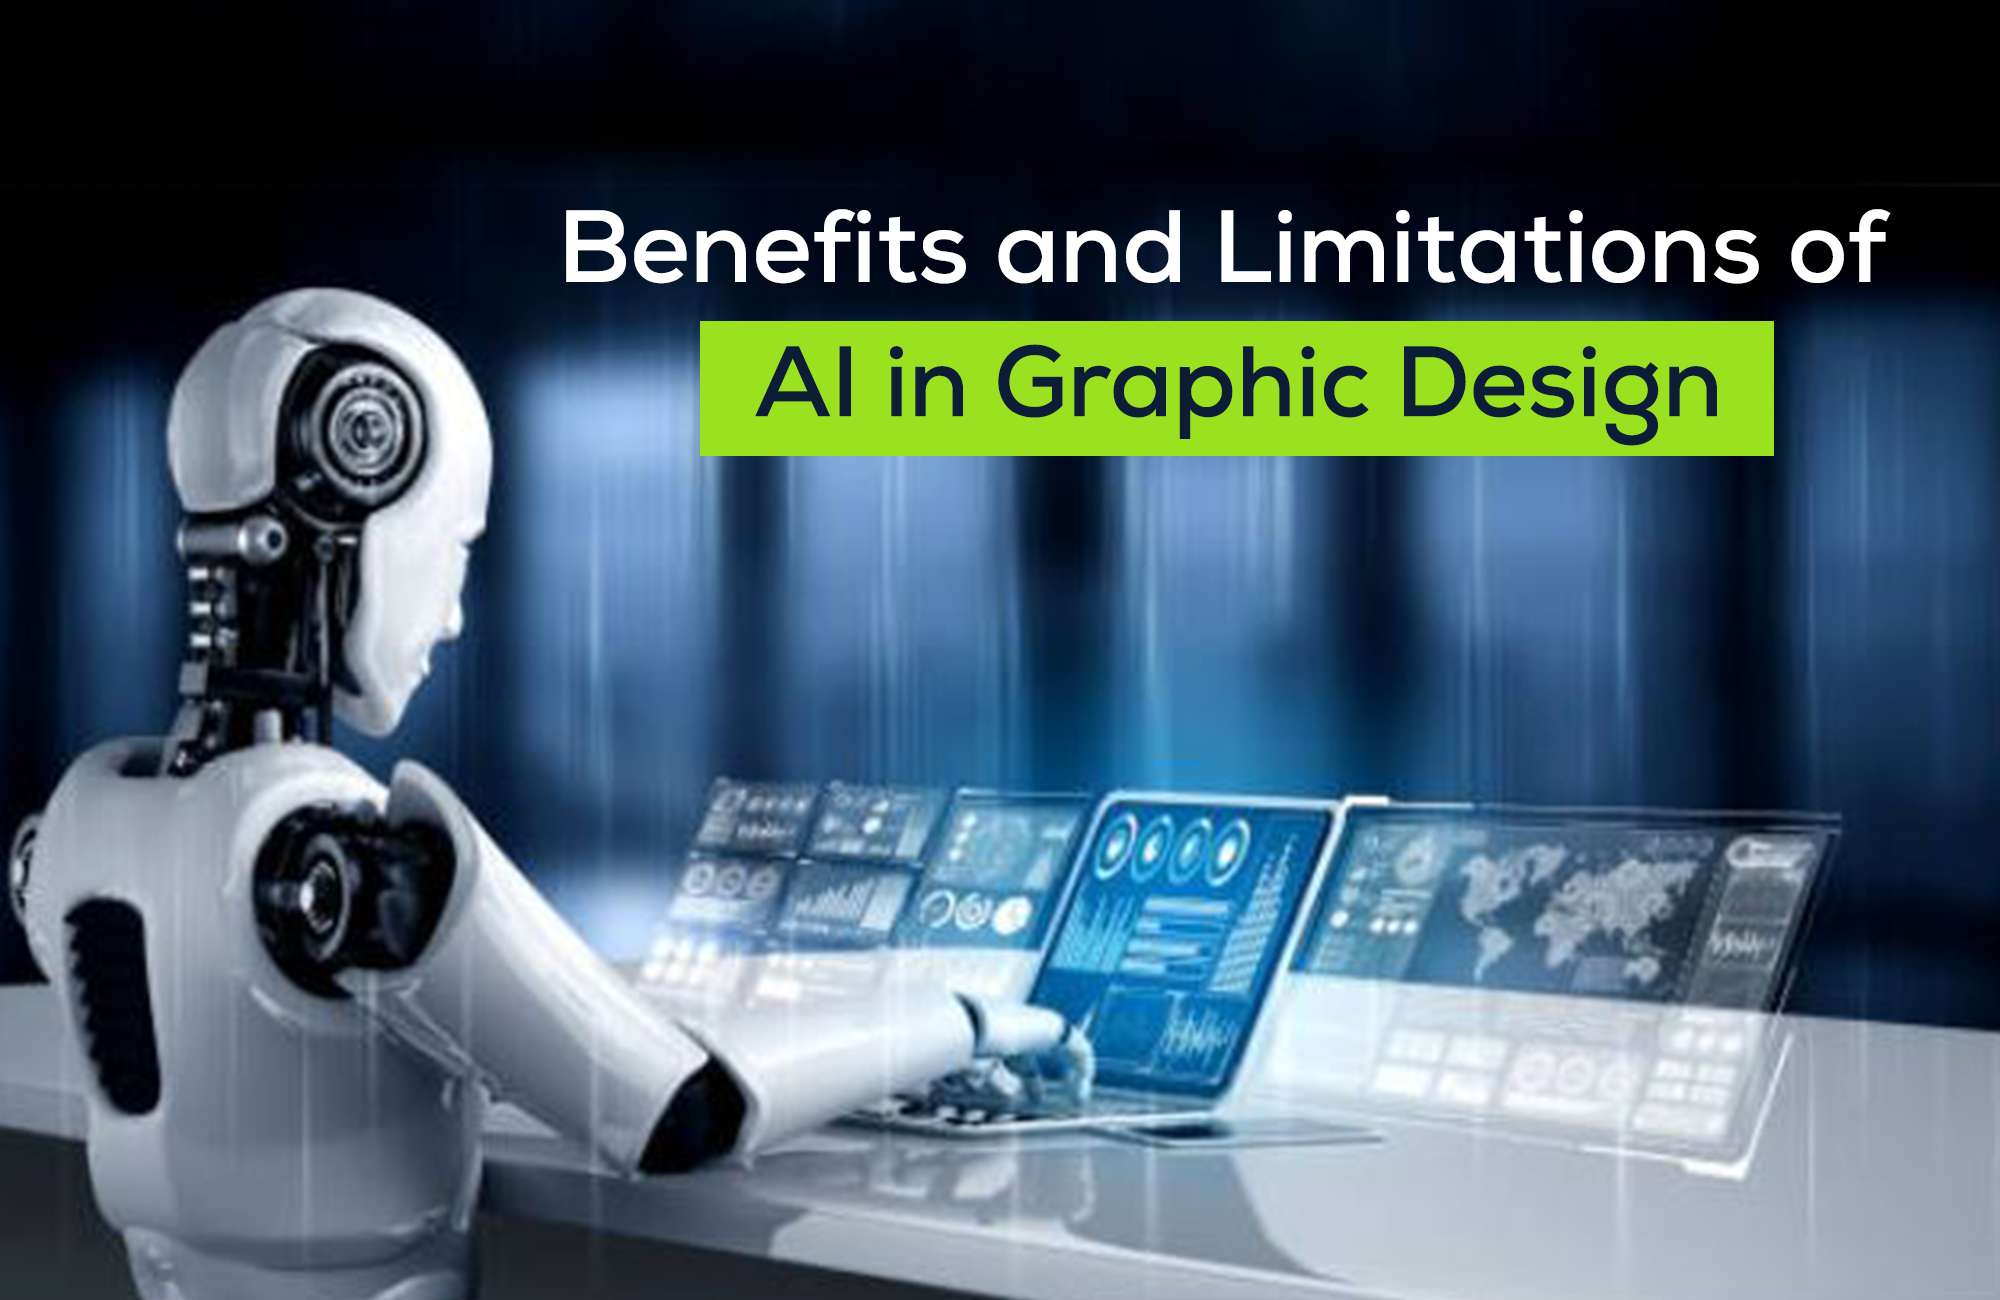 AI in Graphic Design